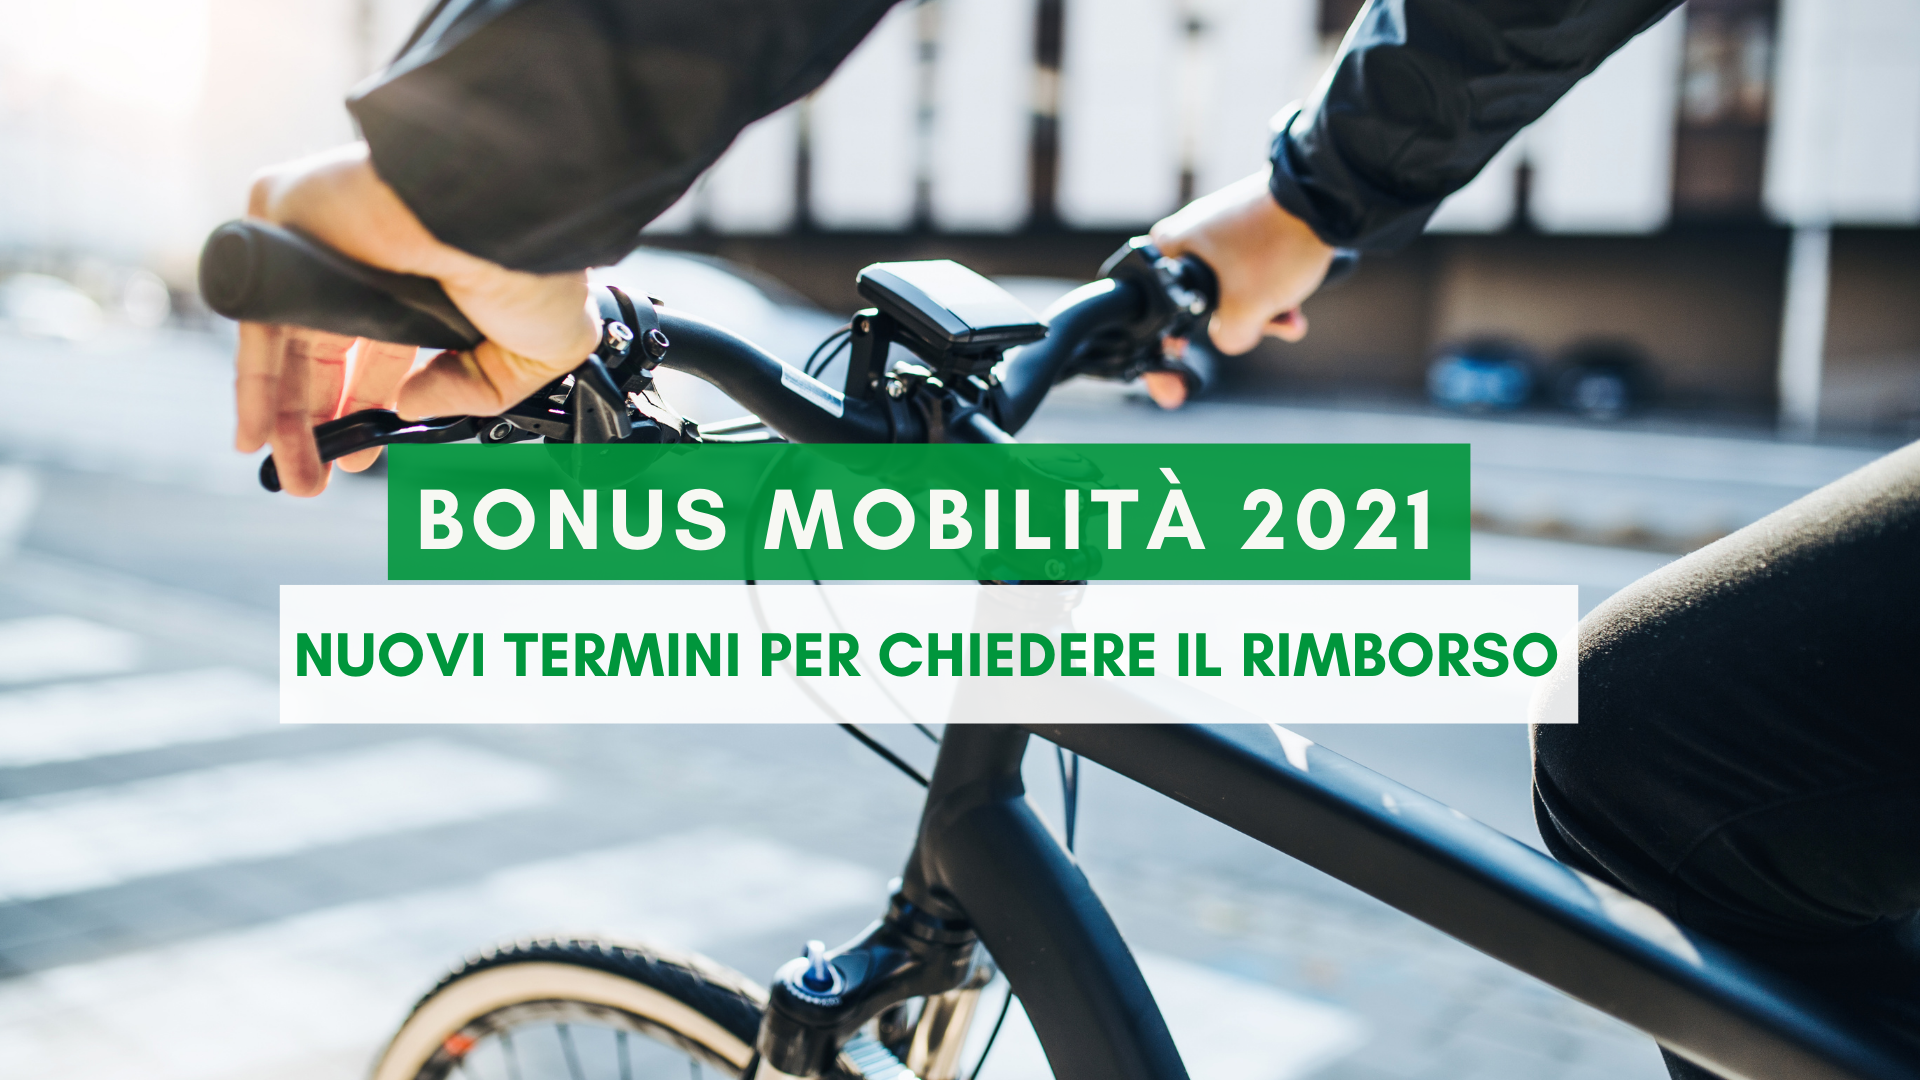 Dal 14 gennaio 2021 al 15 febbraio 2021 è possibile richiedere il rimborso per il bonus mobilità di bici e monopattini elettrici